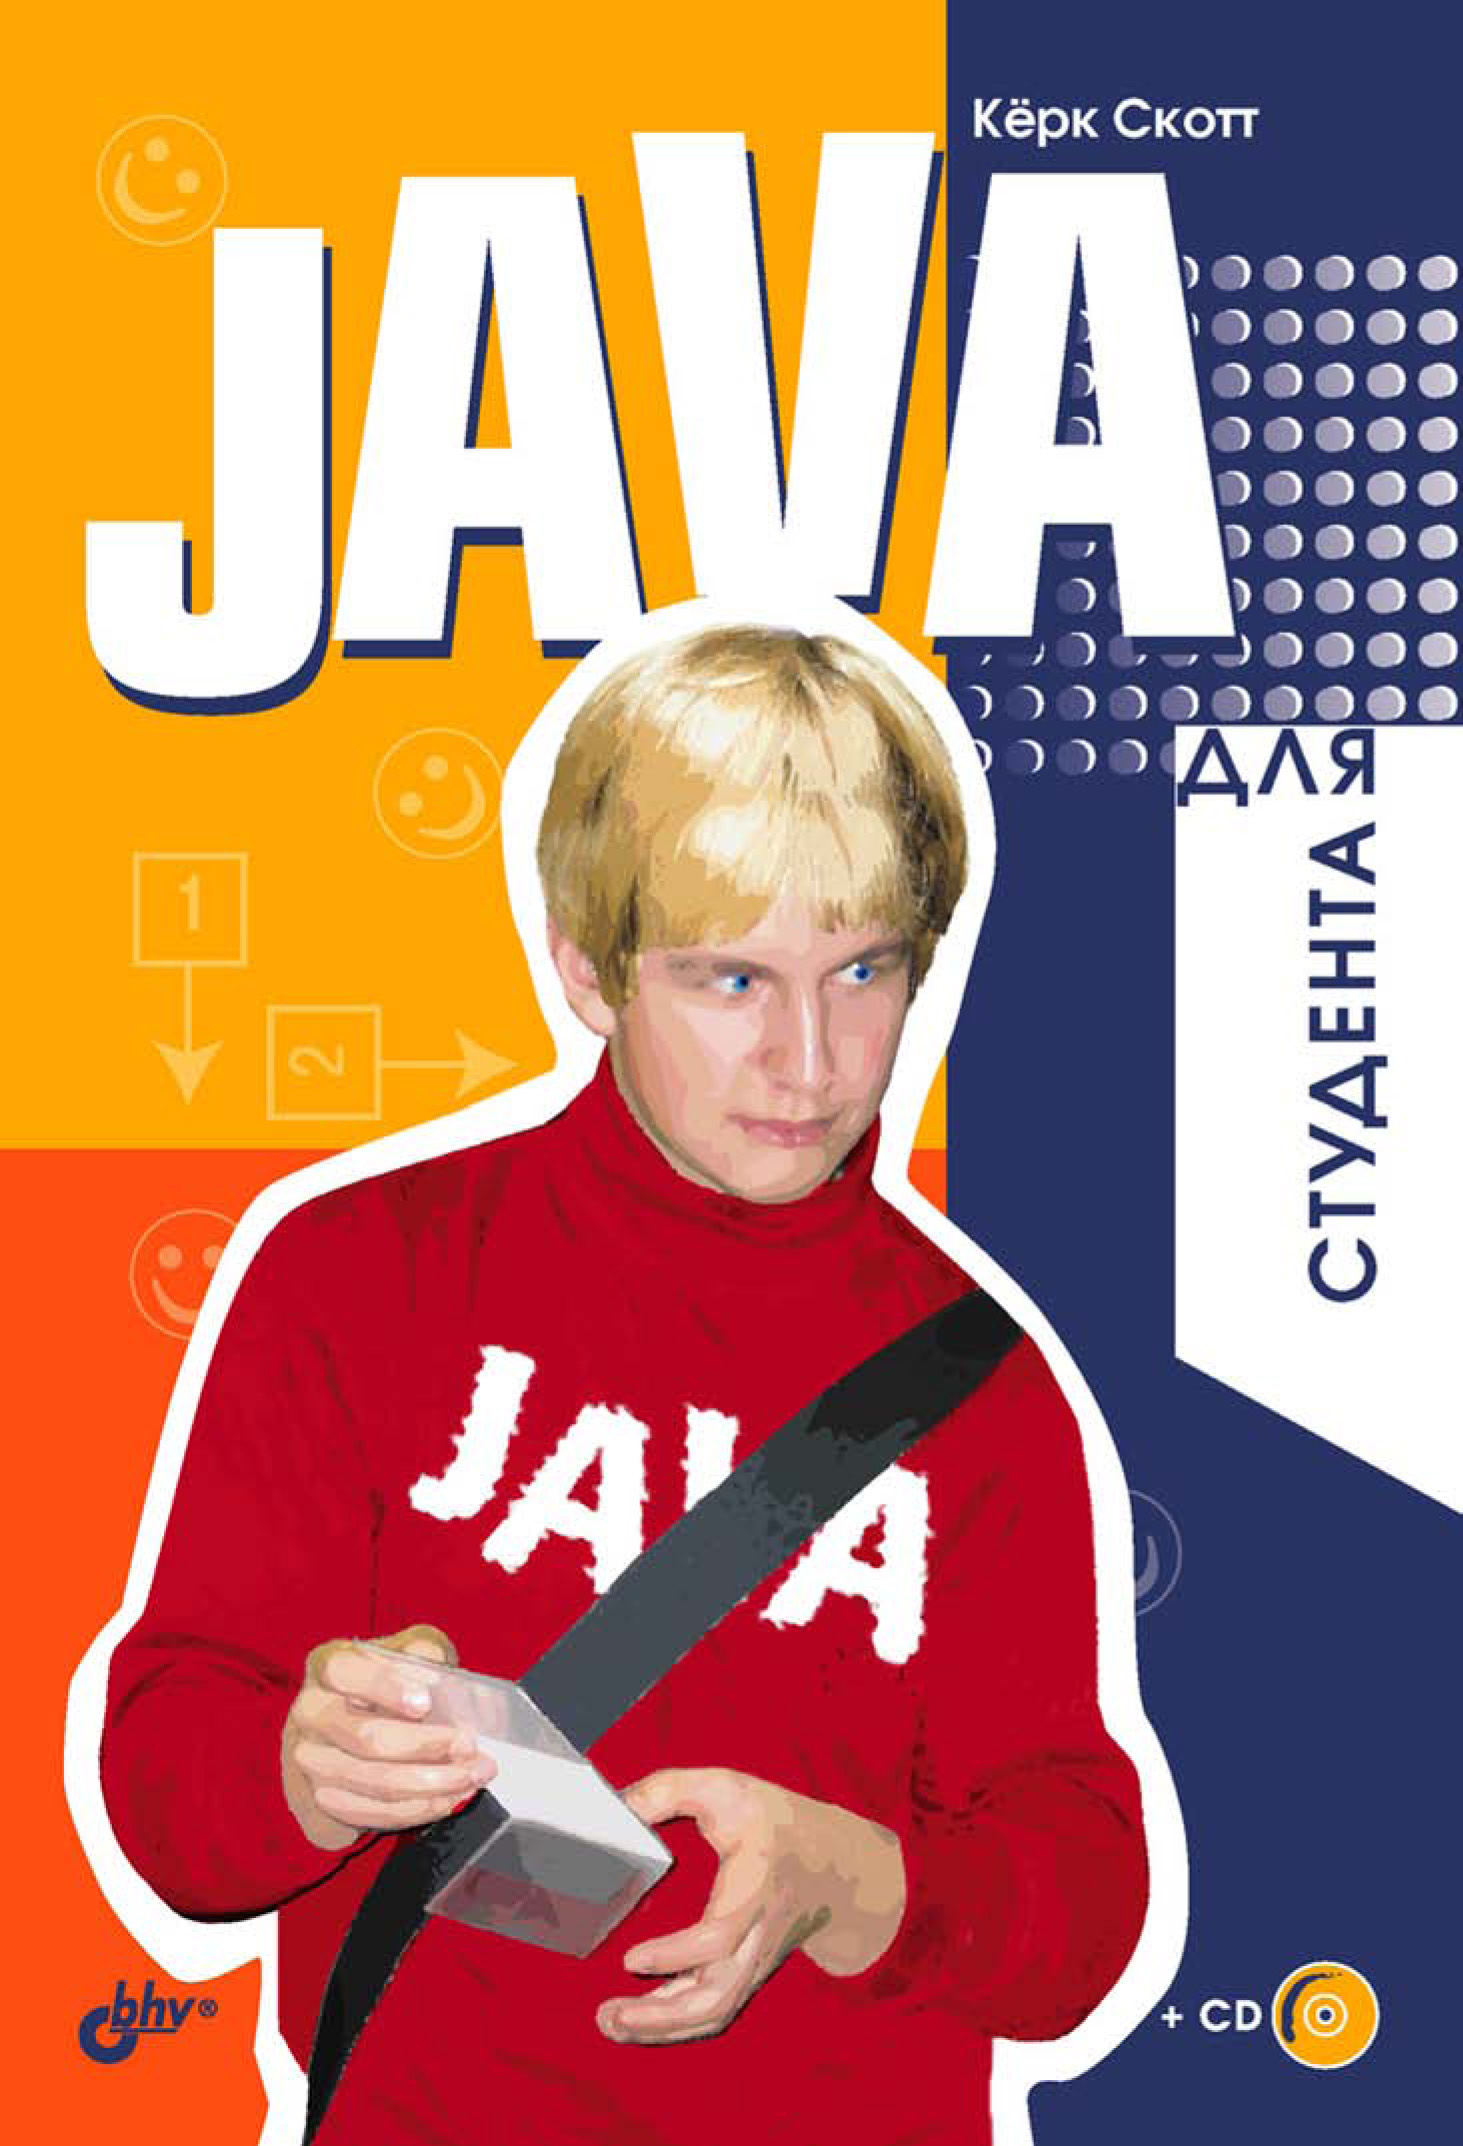 Книга Для студента Java для студента созданная Керк Скотт, Андрей Резников может относится к жанру зарубежная компьютерная литература, программирование. Стоимость электронной книги Java для студента с идентификатором 6661990 составляет 135.00 руб.